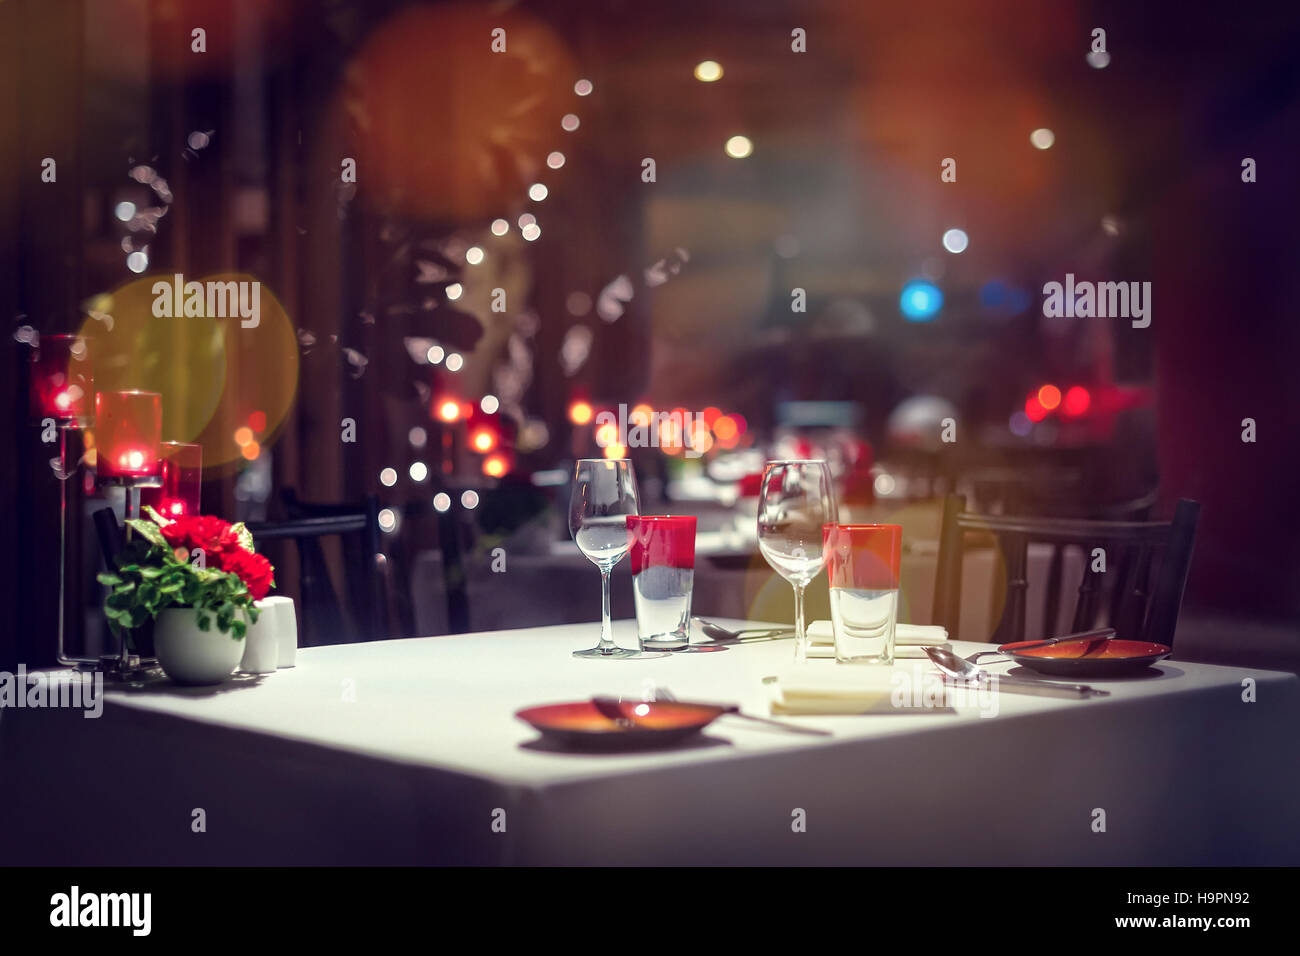 Cena romántica o vacaciones de configuración configuración de tabla, adornos rojos con la luz de una vela. Foto de stock